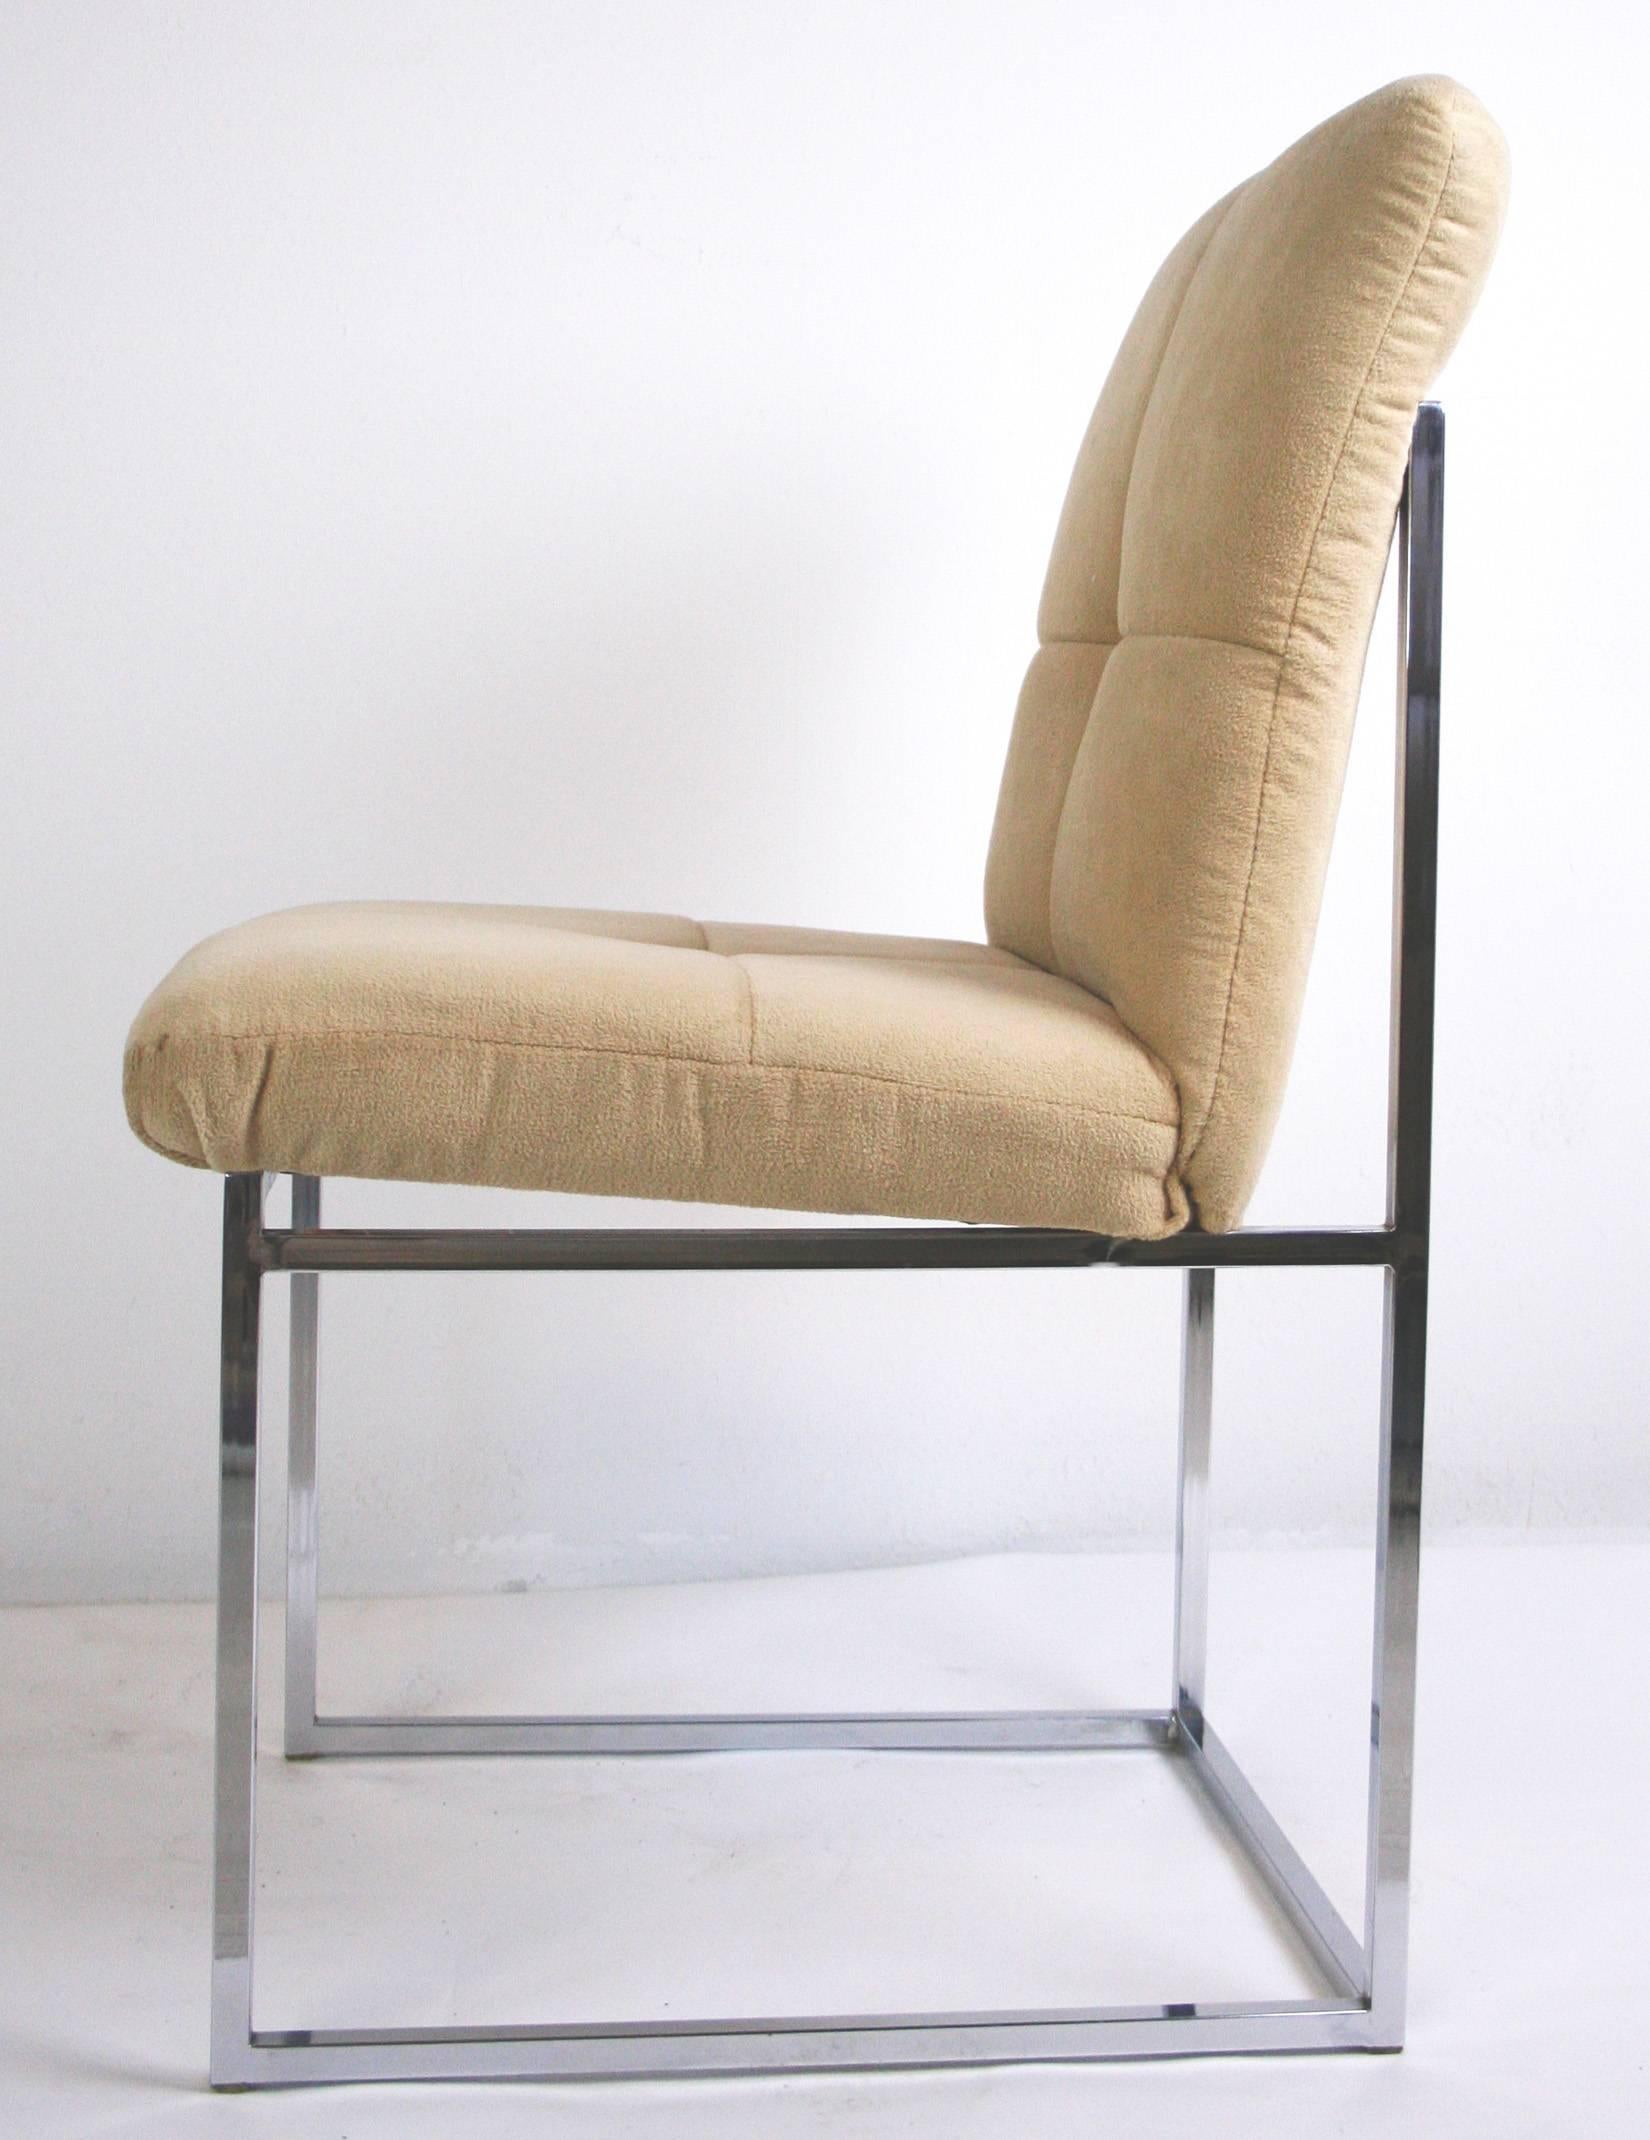 Paire de chaises latérales Cal-Style Mid-Century Modern avec base tubulaire chromée et assise et dossier rembourrés d'origine.